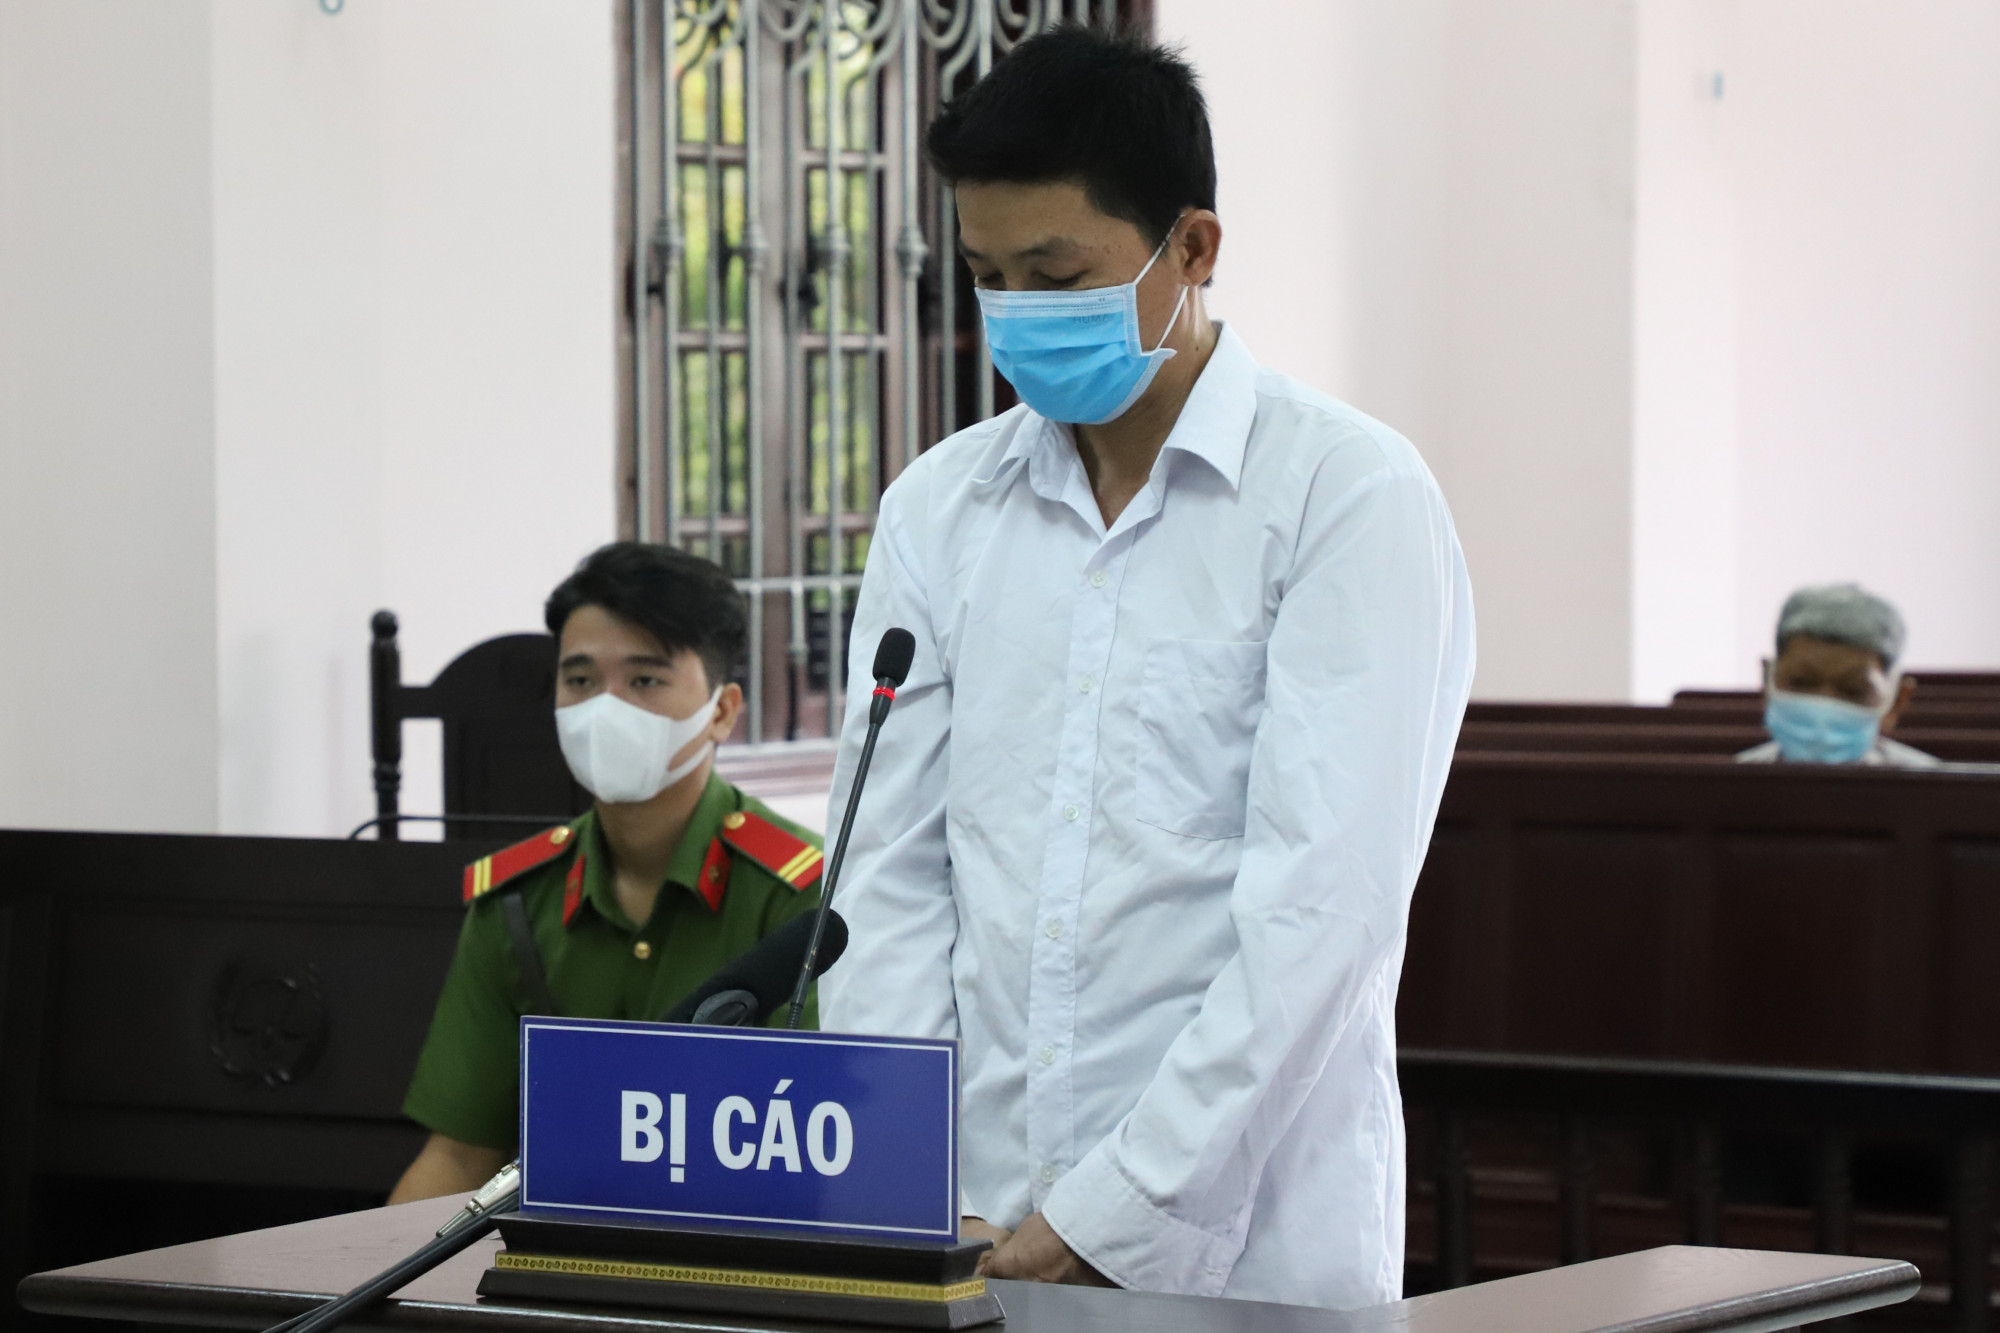 Bị cáo Nguyễn Văn Tồn bị tuyên phạt 5 năm 6 tháng tù về tội giết người